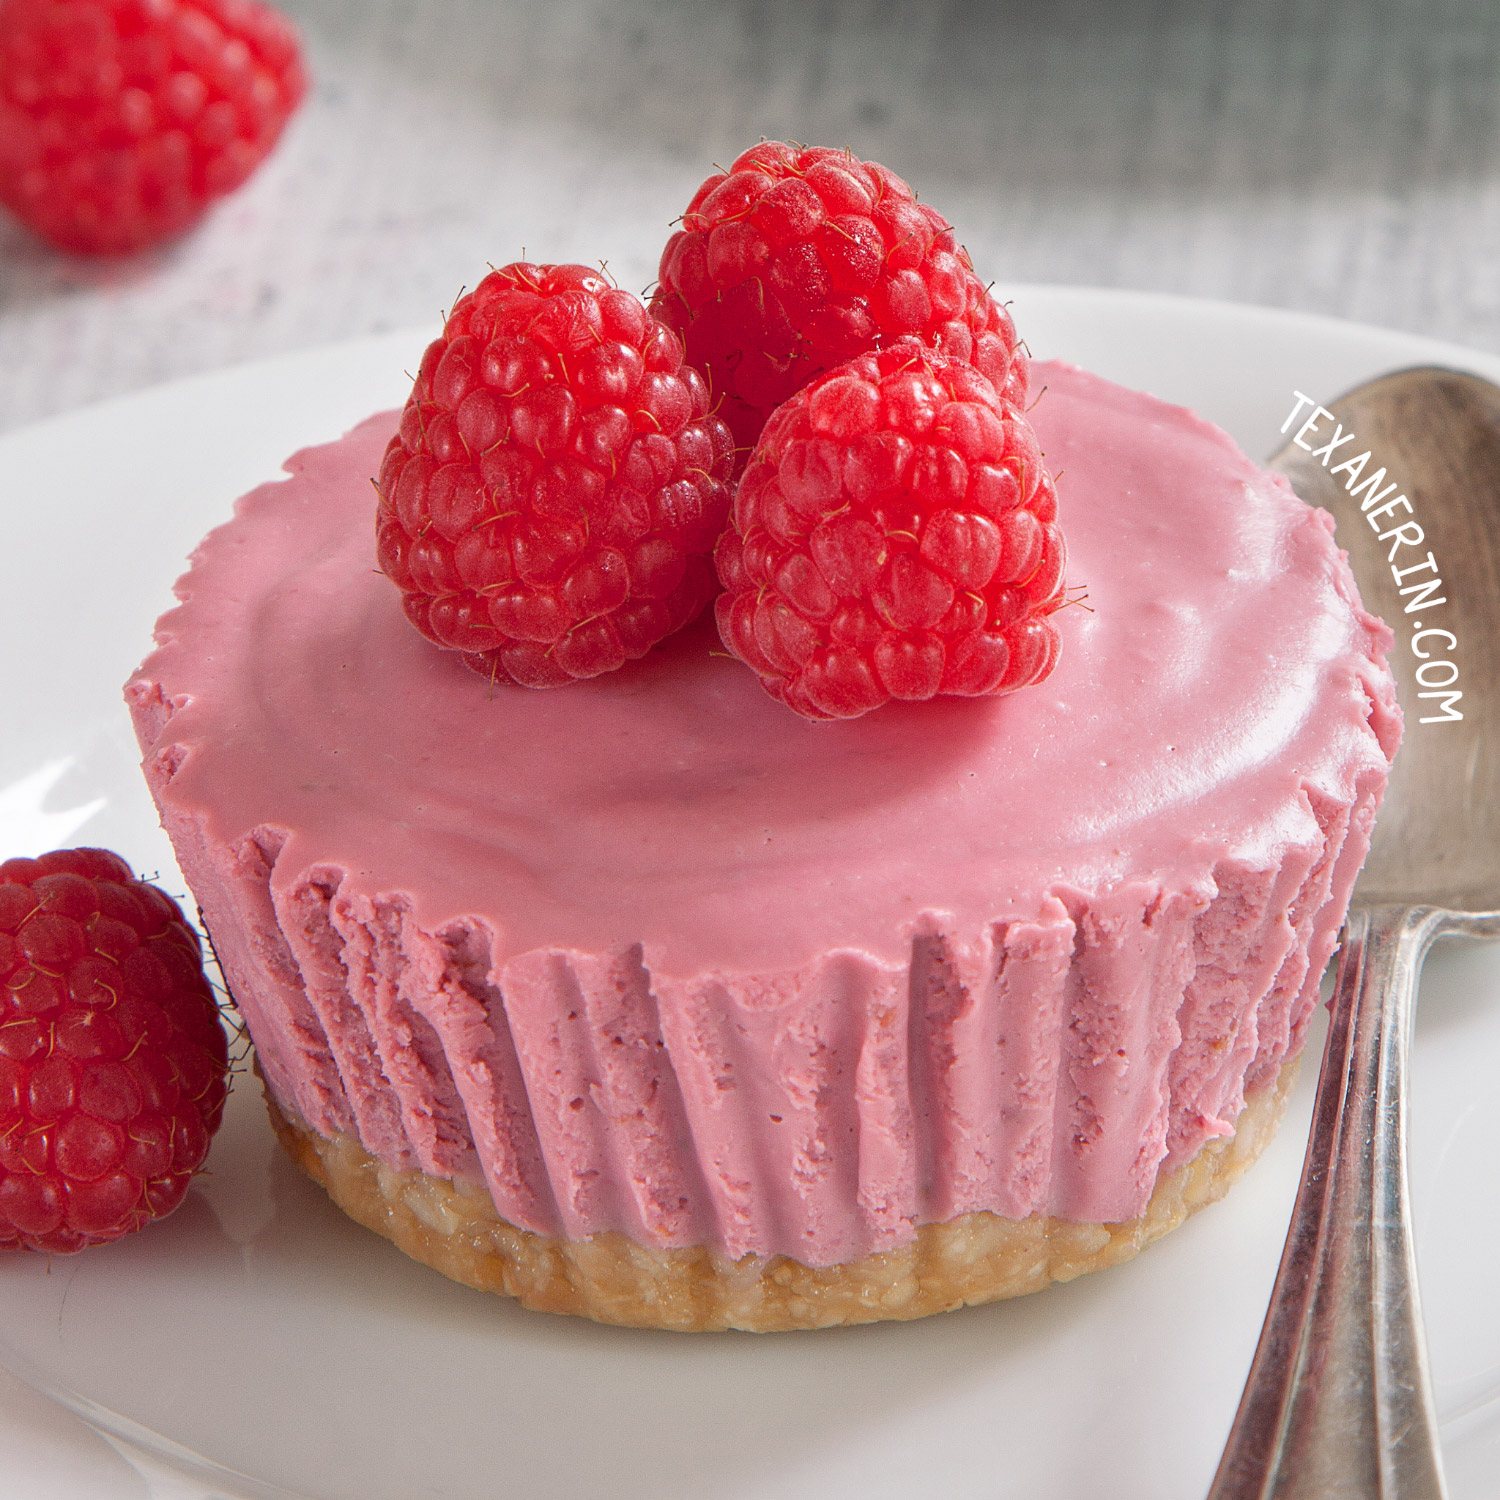 Paleo No-Bake Raspberry Cream Pies (vegan, grain-free, gluten-free